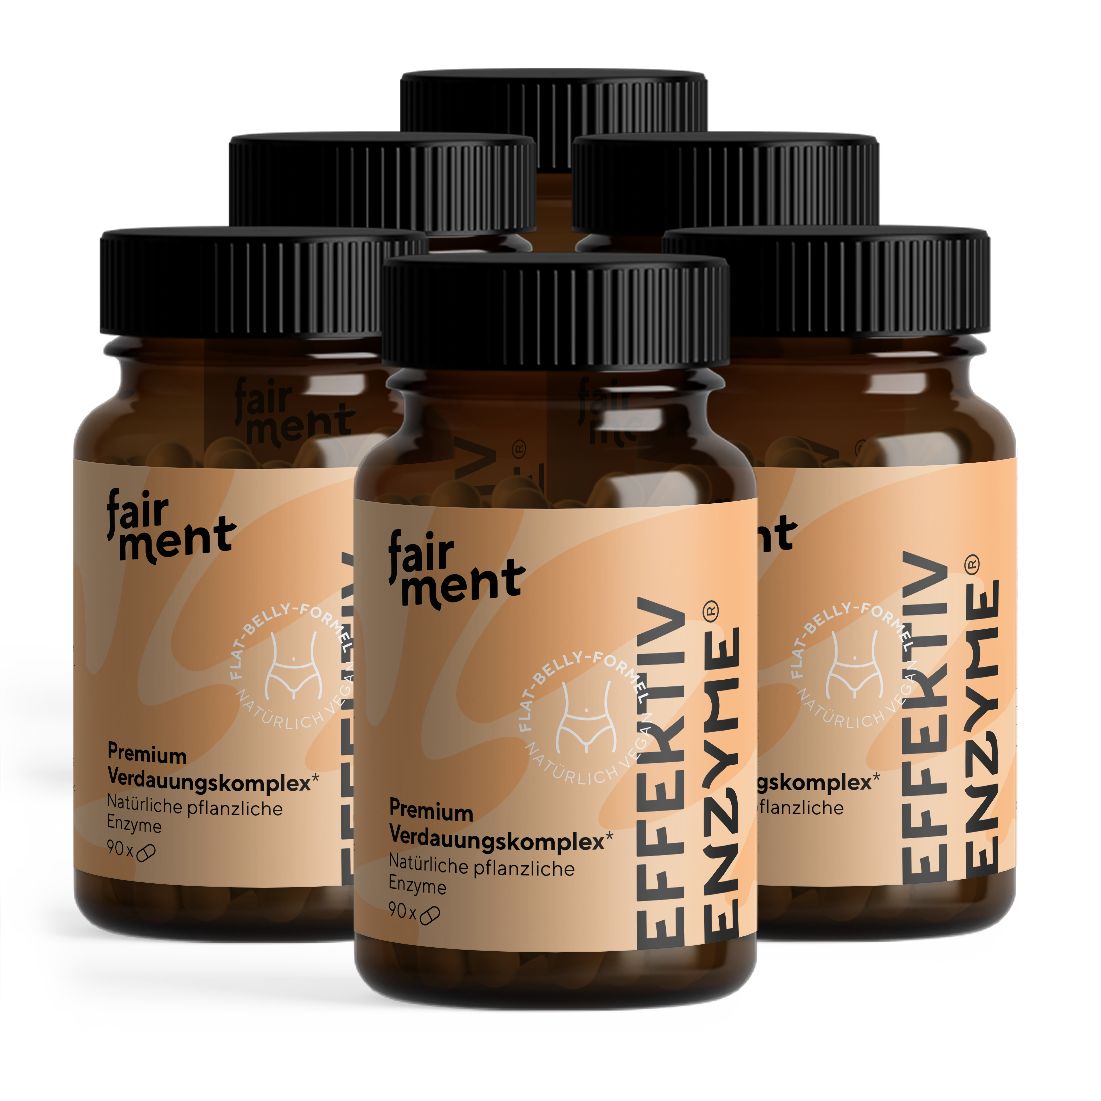 Fairment EffektivEnzyme® - Premium Verdauungskomplex